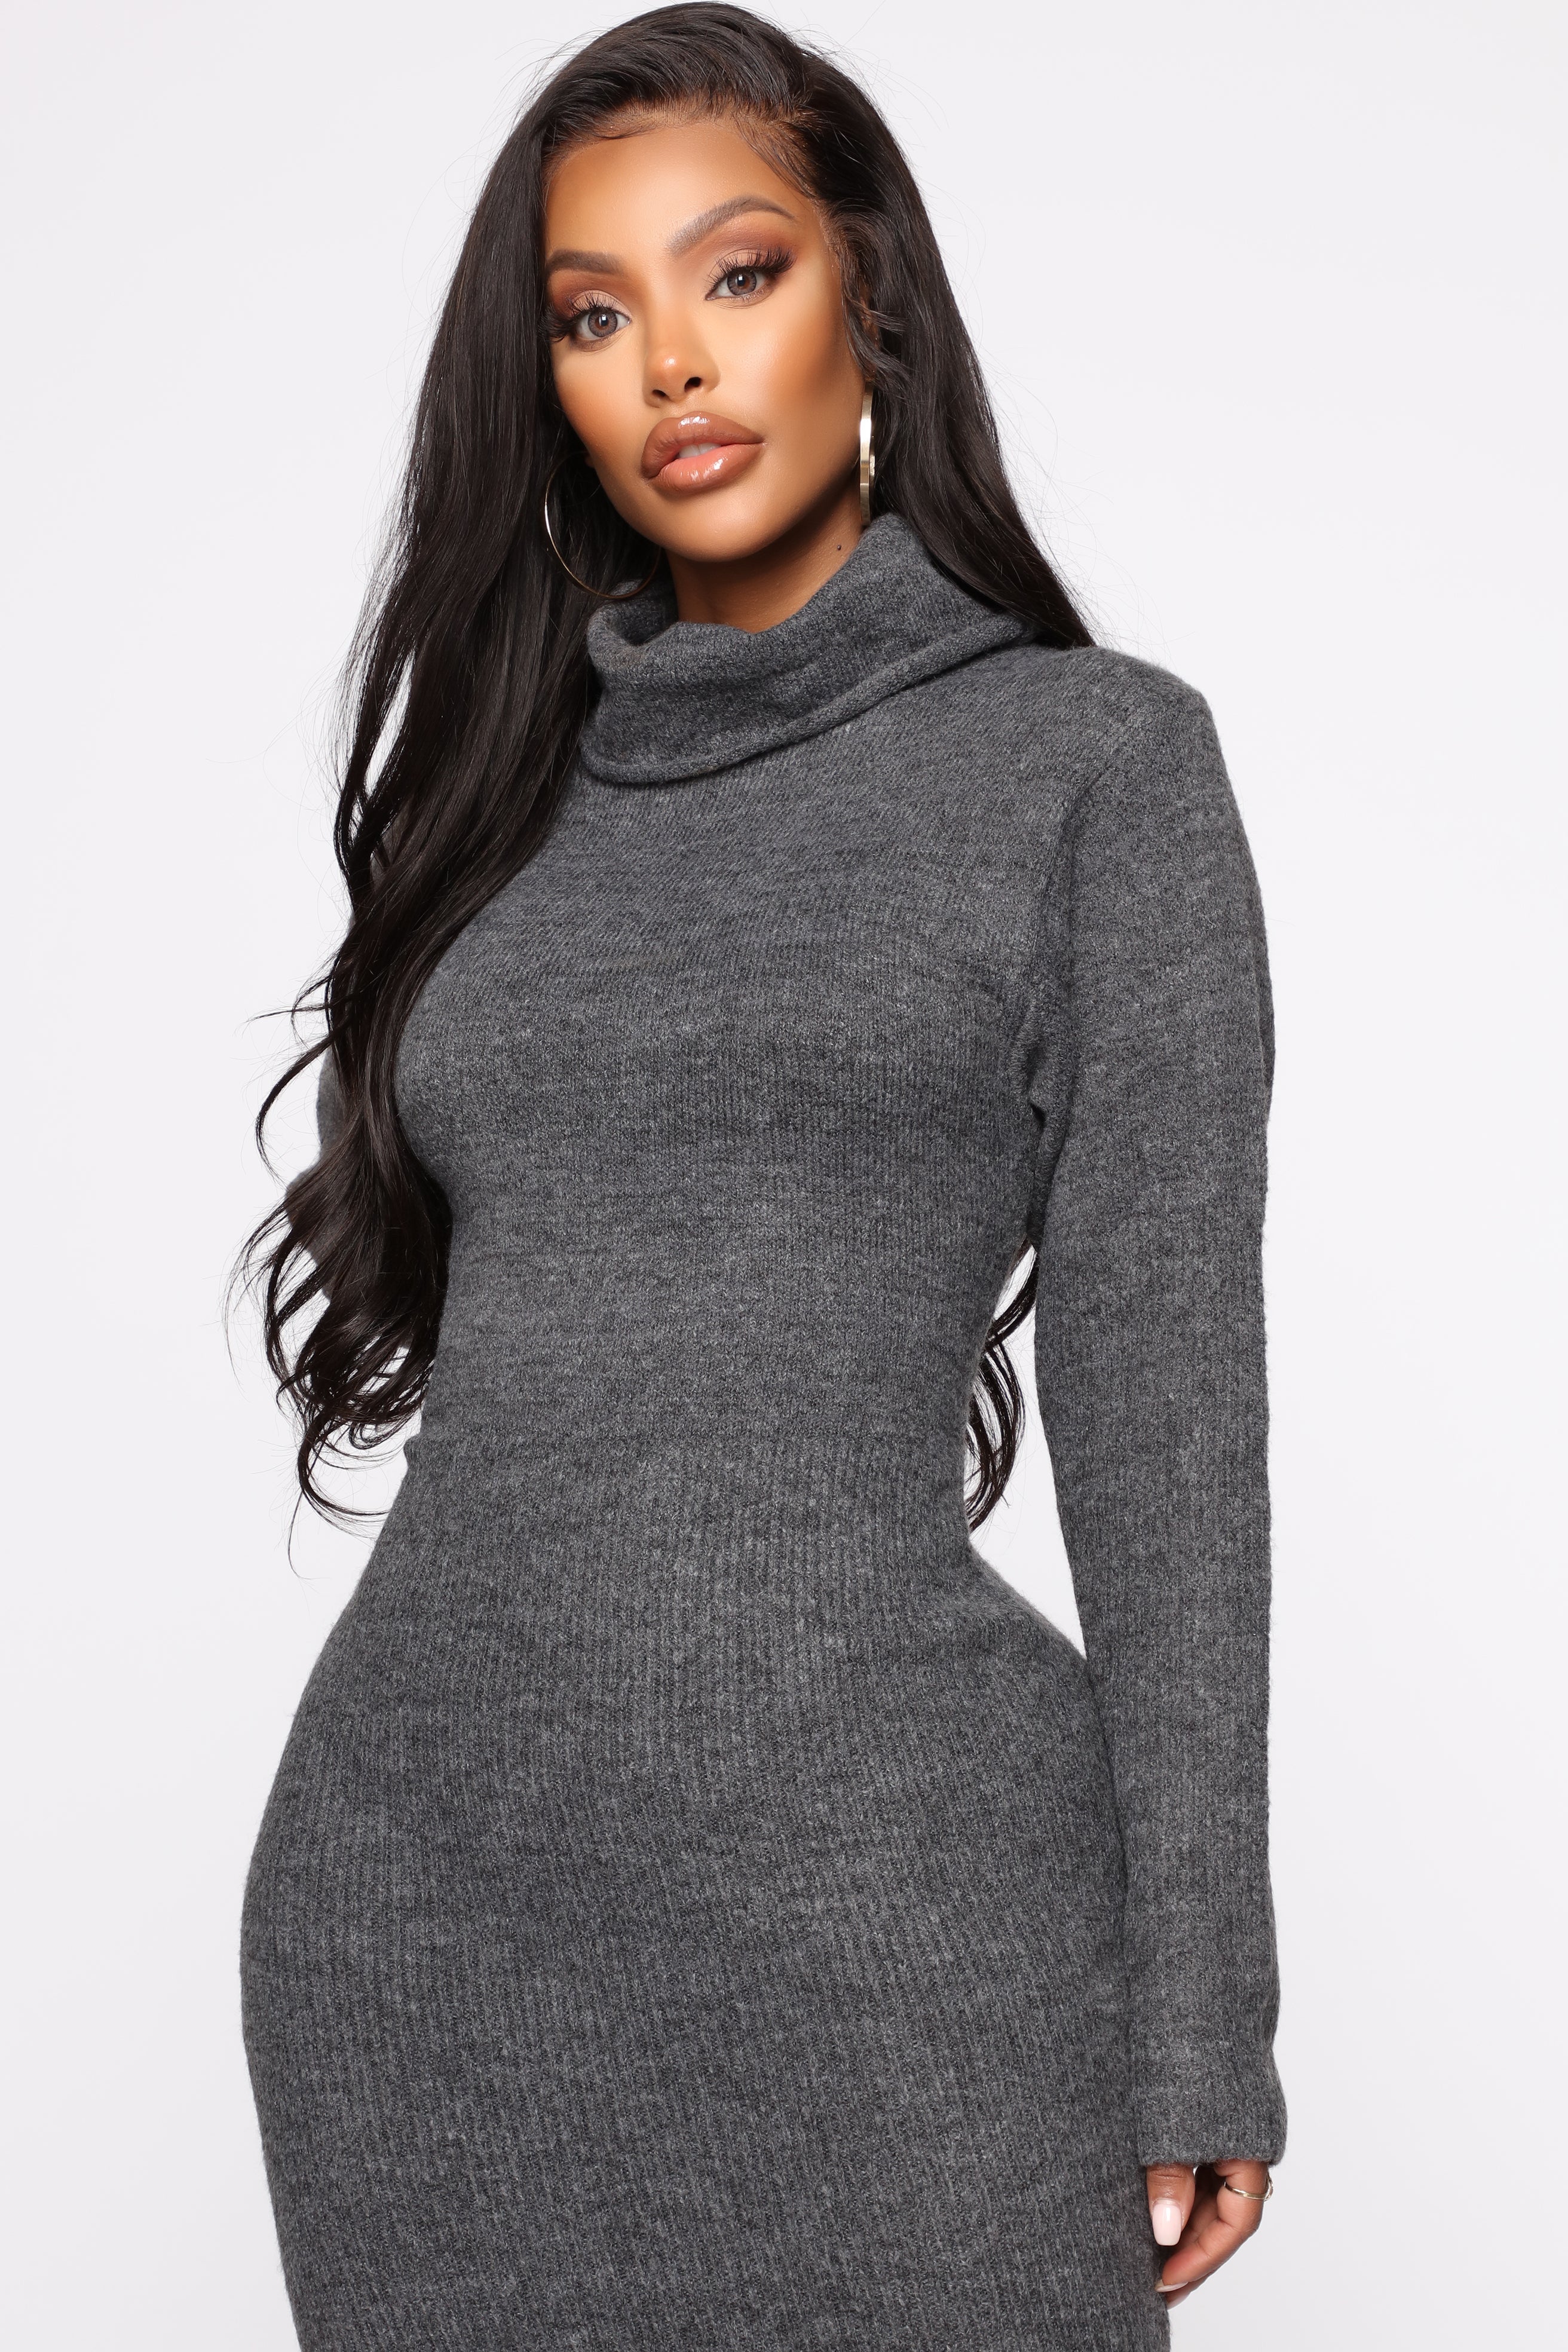 Soft Spot For You Sweater Dress - Charcoal – Fashion Nova